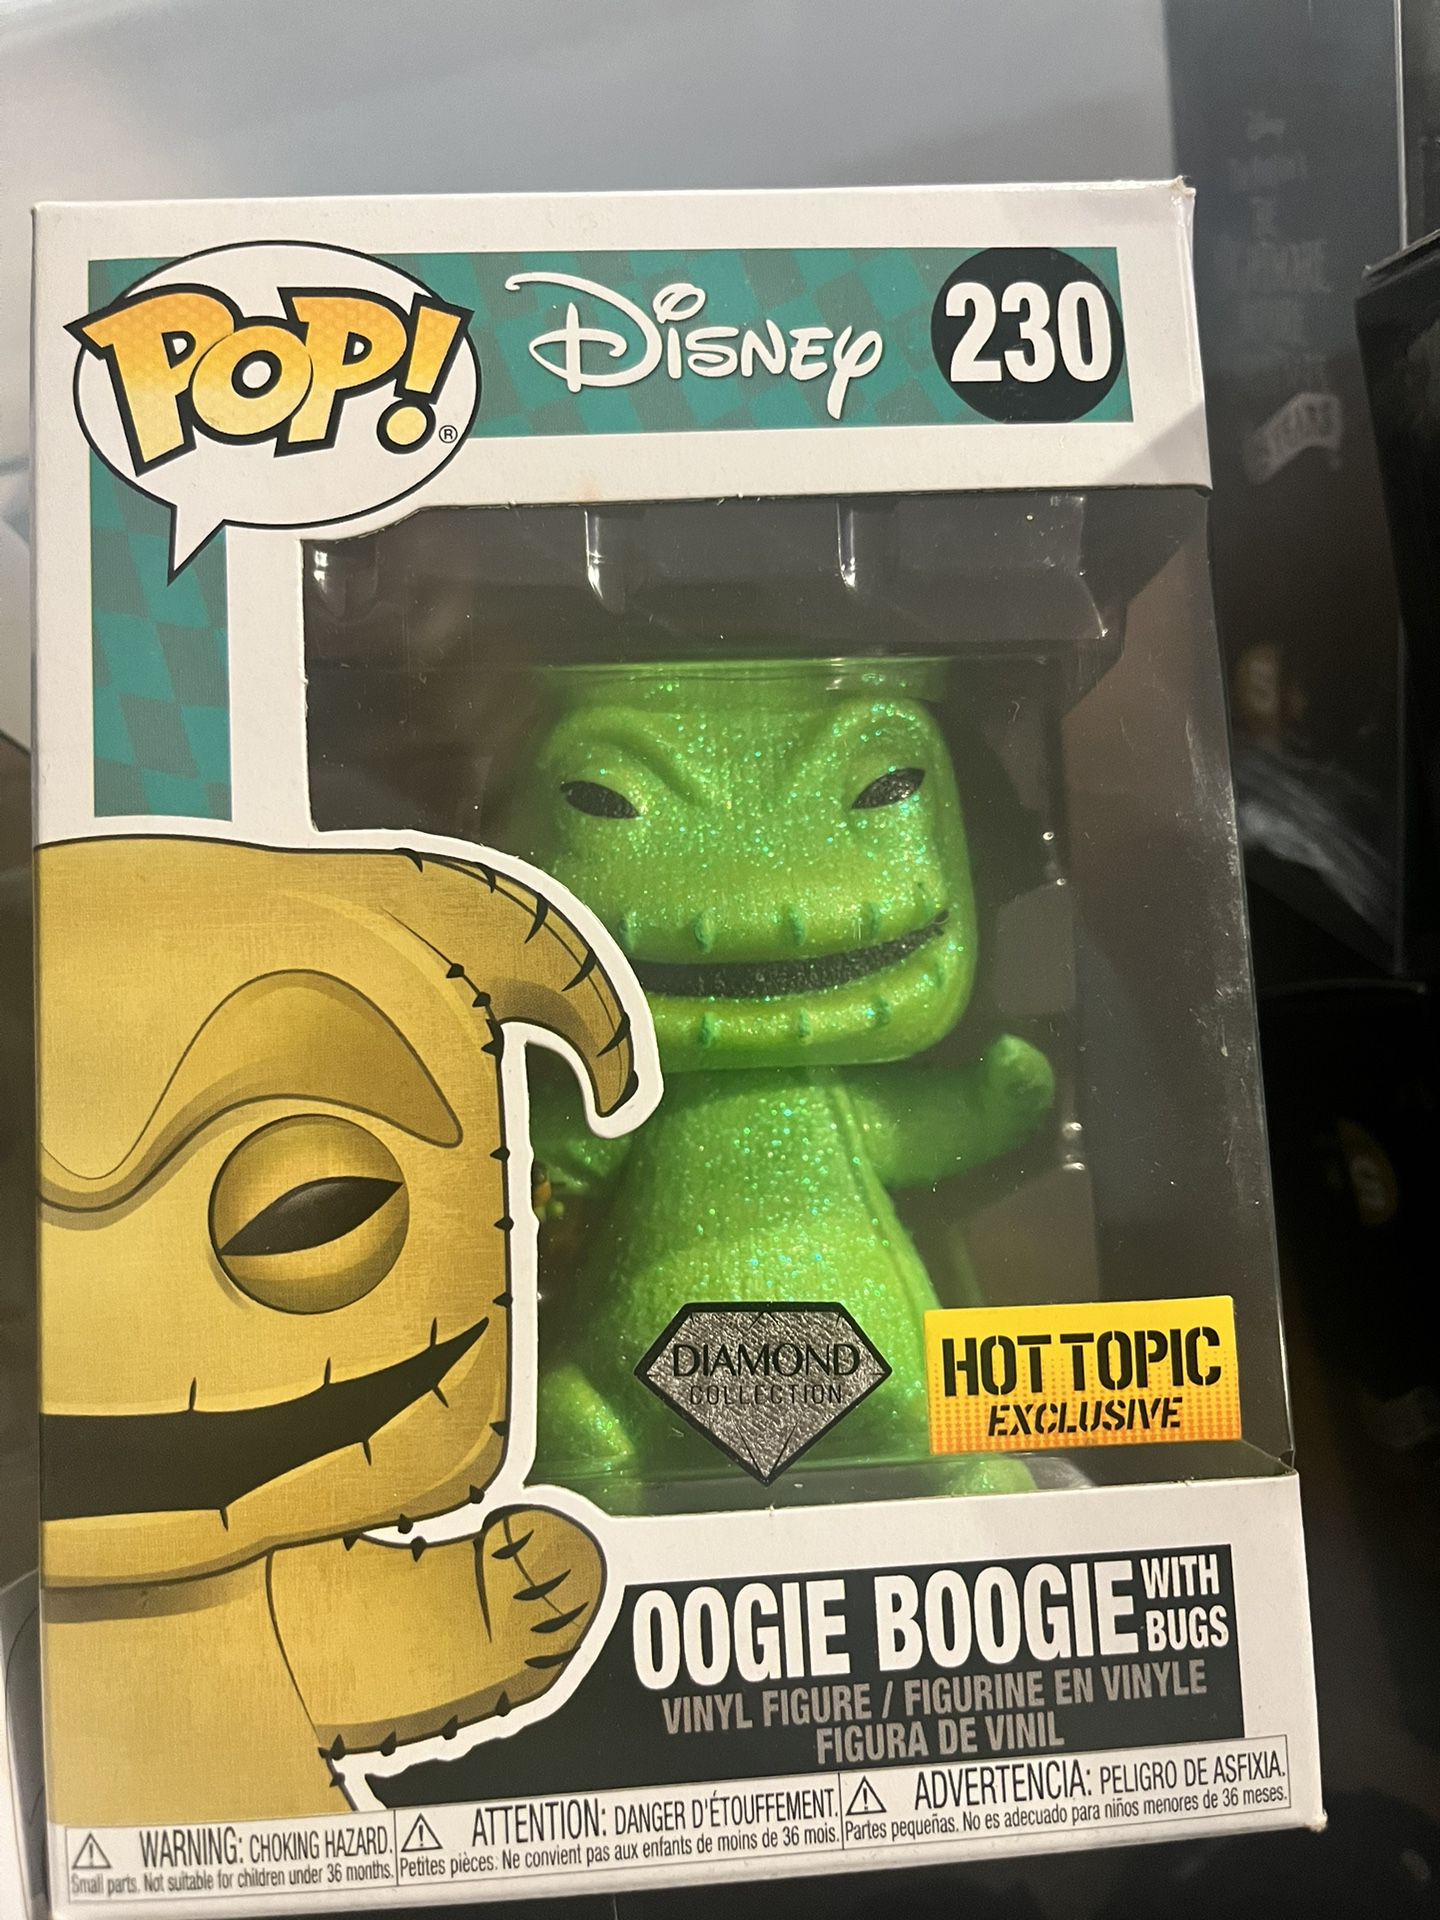 Oogie Boogie Pop Disney 230